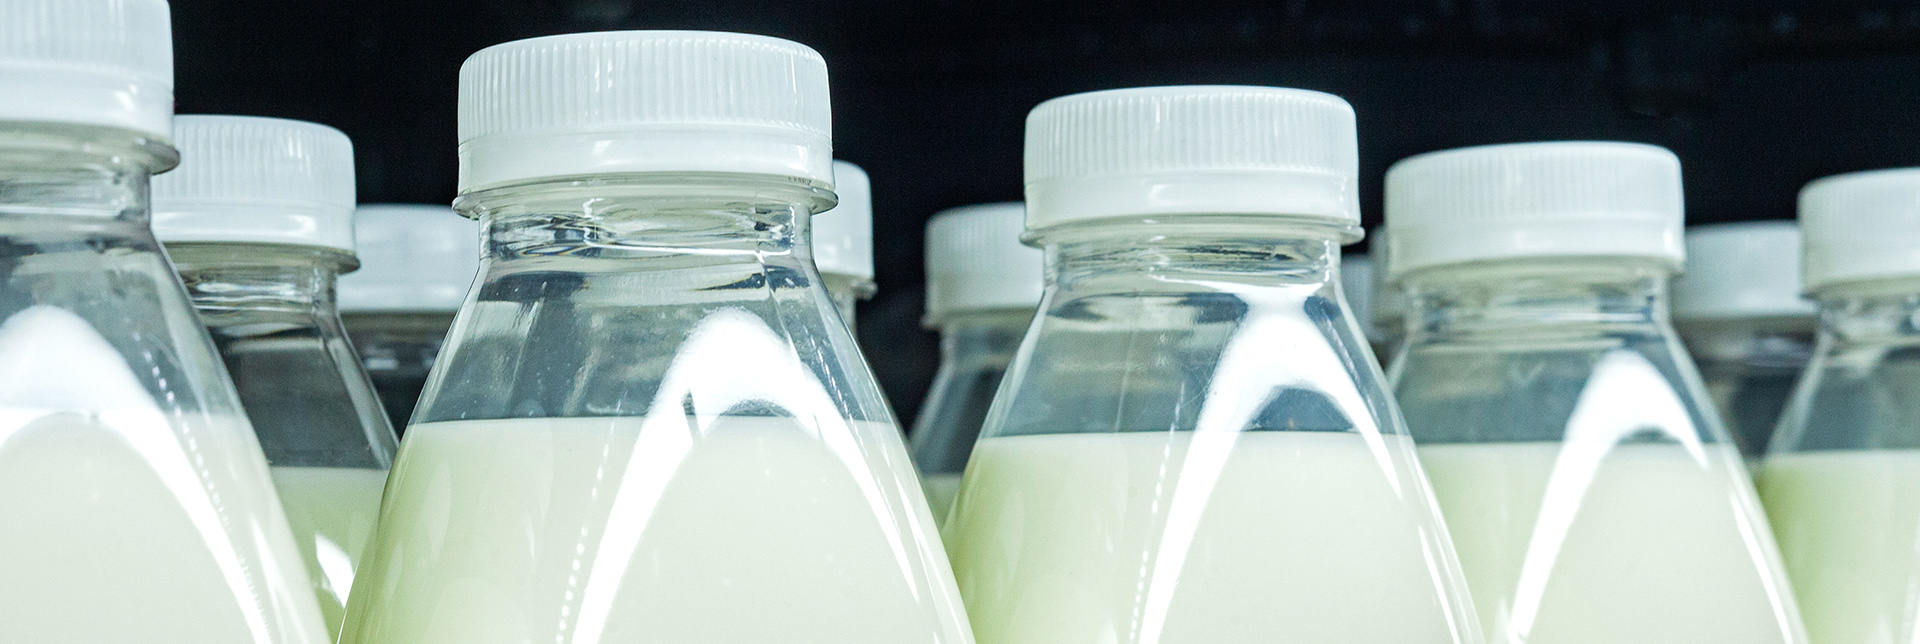 Producción de la leche | ¿Qué es lo que realmente marca el precio de la leche?